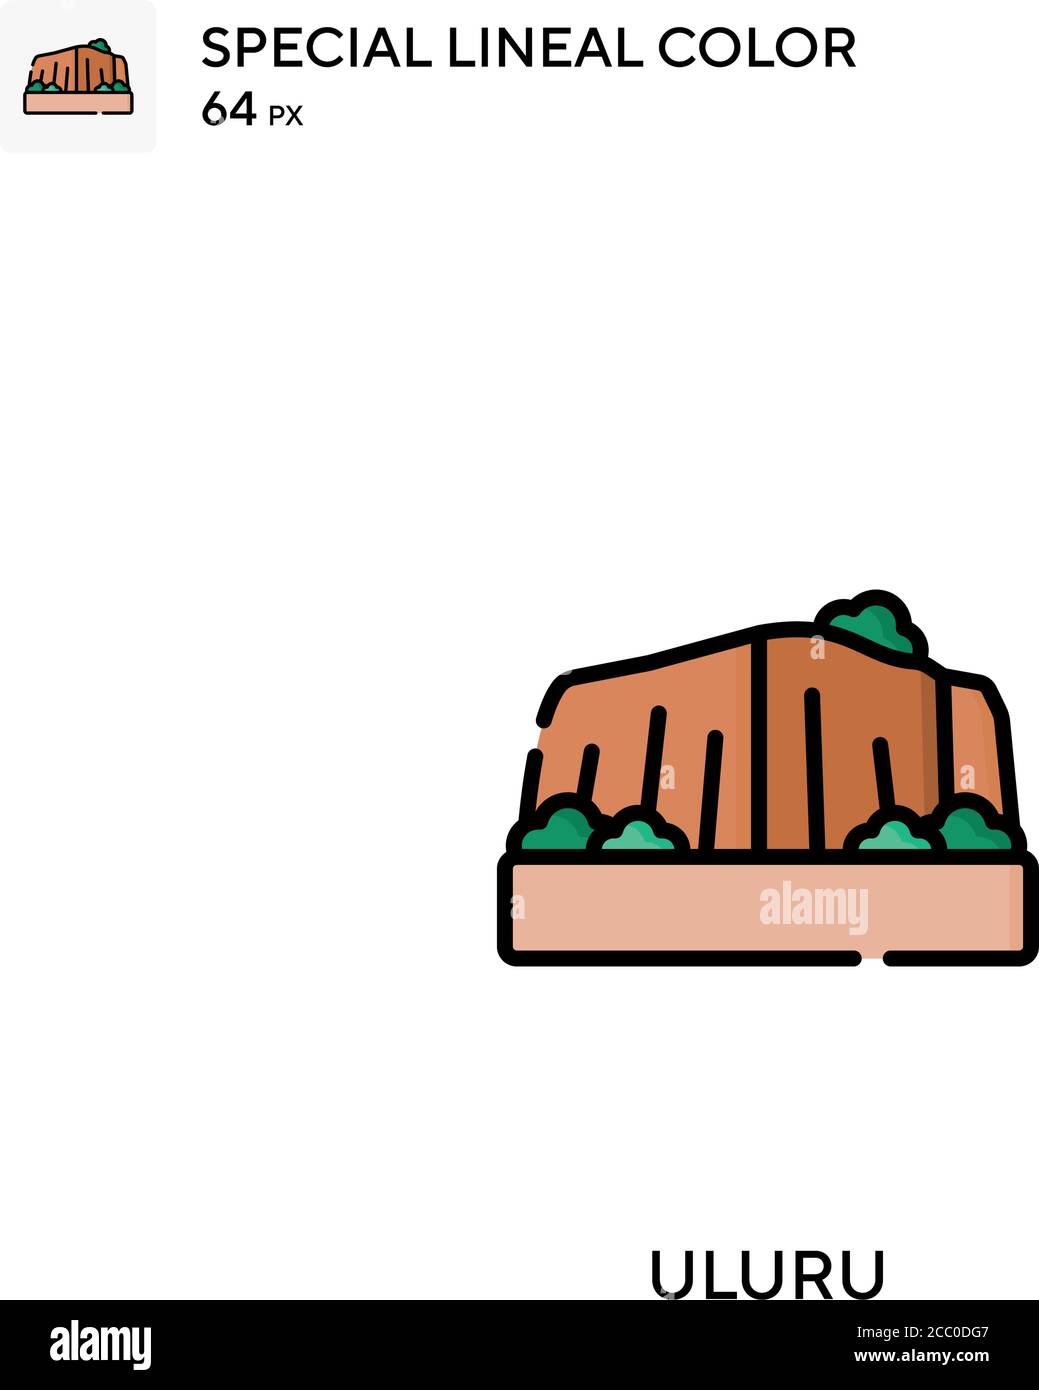 Uluru icona vettore di colore lineare speciale. Icone Uluru per il vostro progetto aziendale Illustrazione Vettoriale